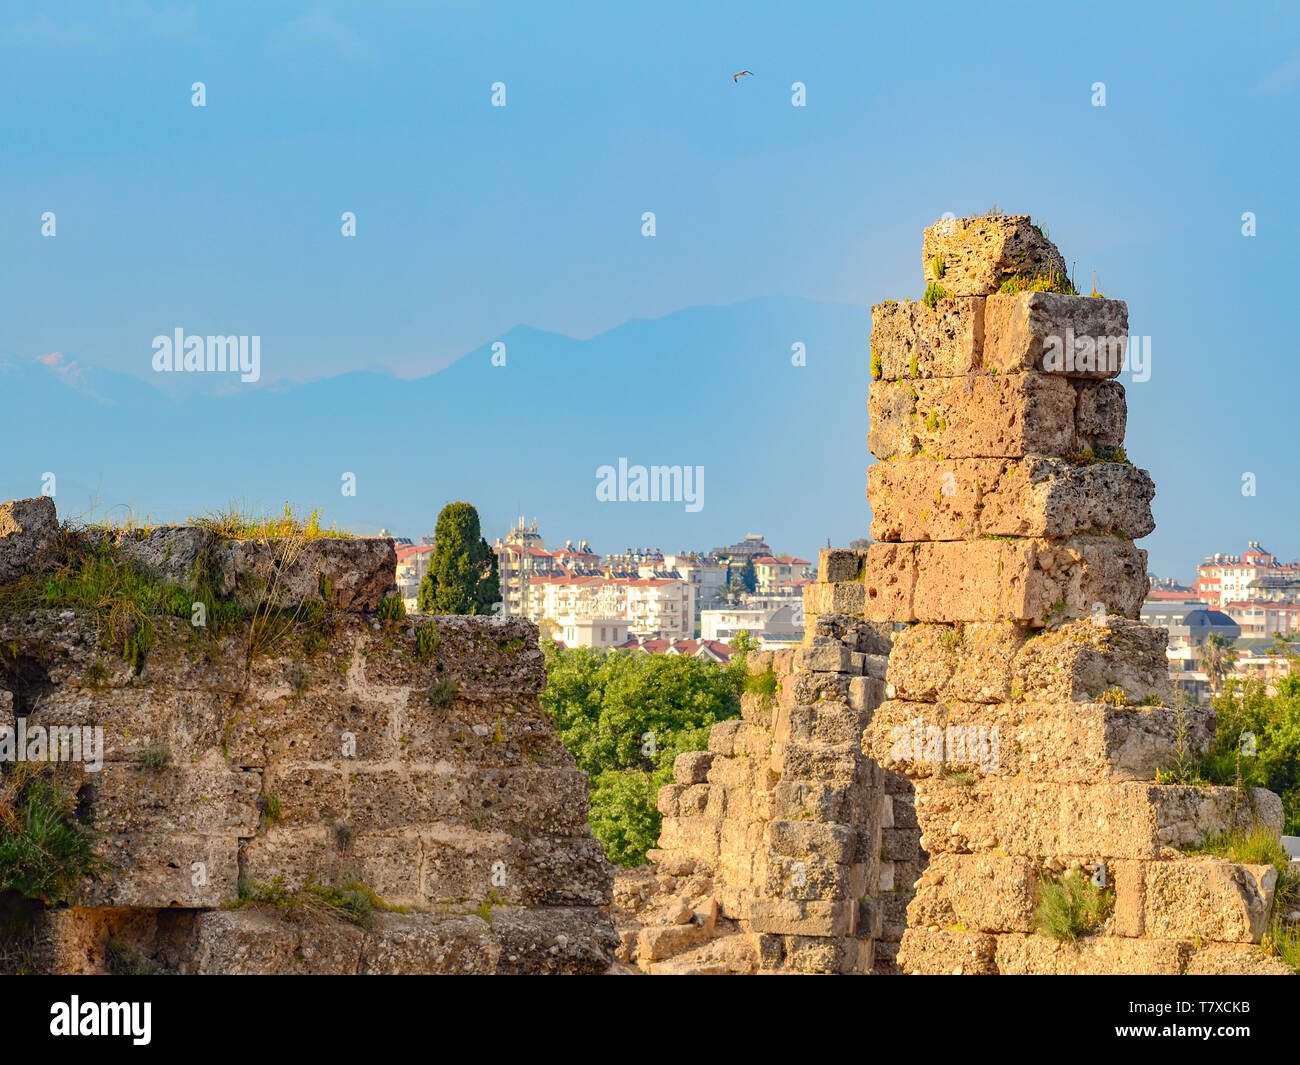 Die Ruinen einer antiken Stadt in der Nähe, auf dem Hintergrund der modernen Stadt und die Berge. Konzept der Zerstörung und Wiedergeburt Stockfoto